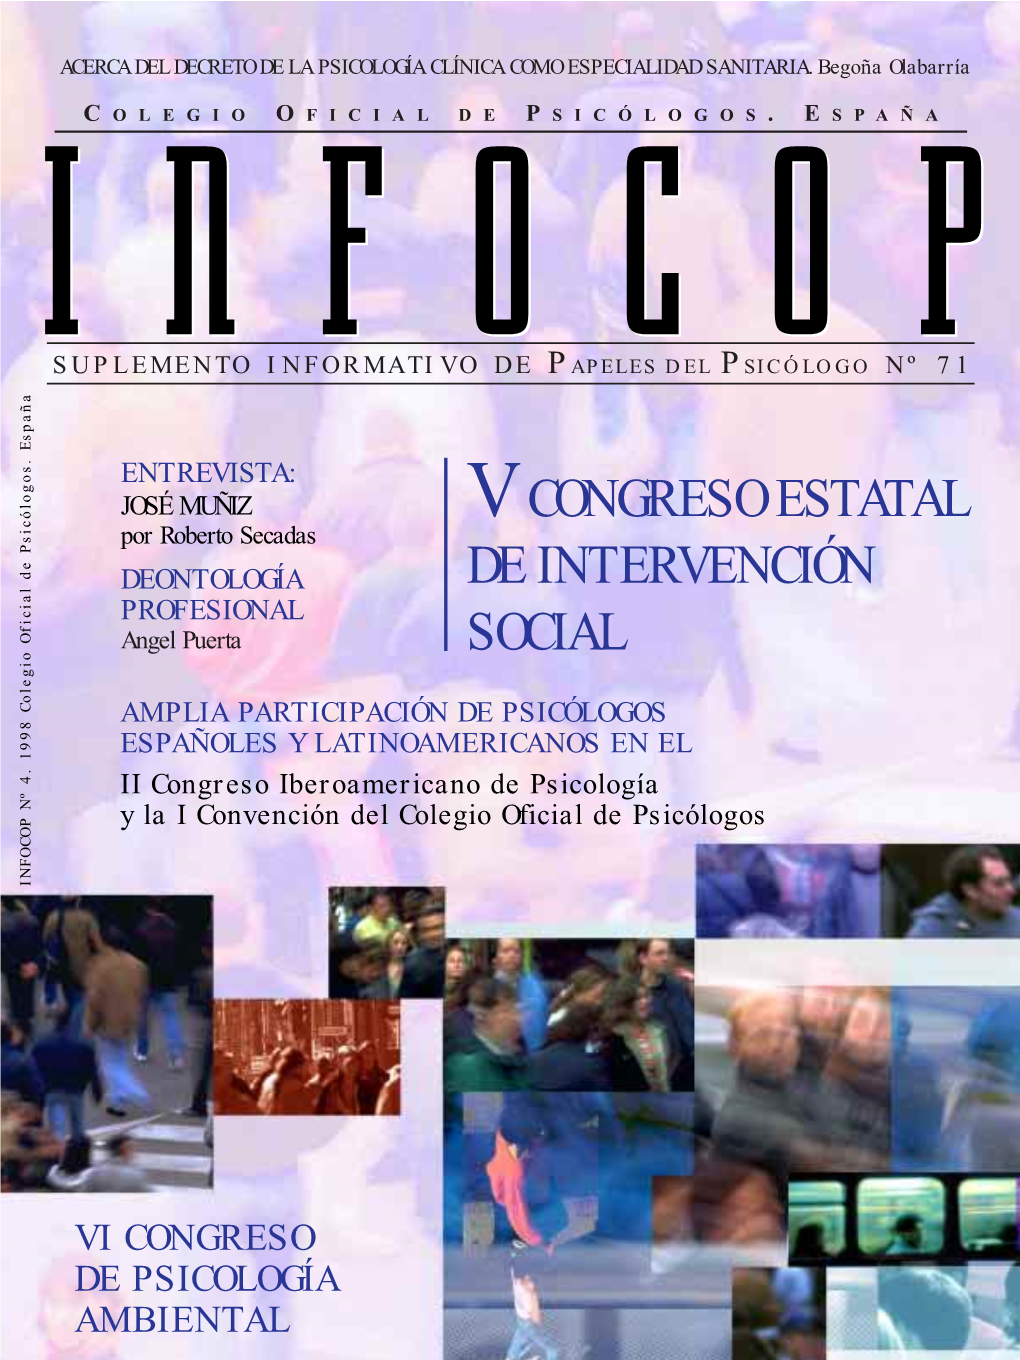 VCONGRESO ESTATAL DE INTERVENCIÓN SOCIAL O INFOCOP Nº 4